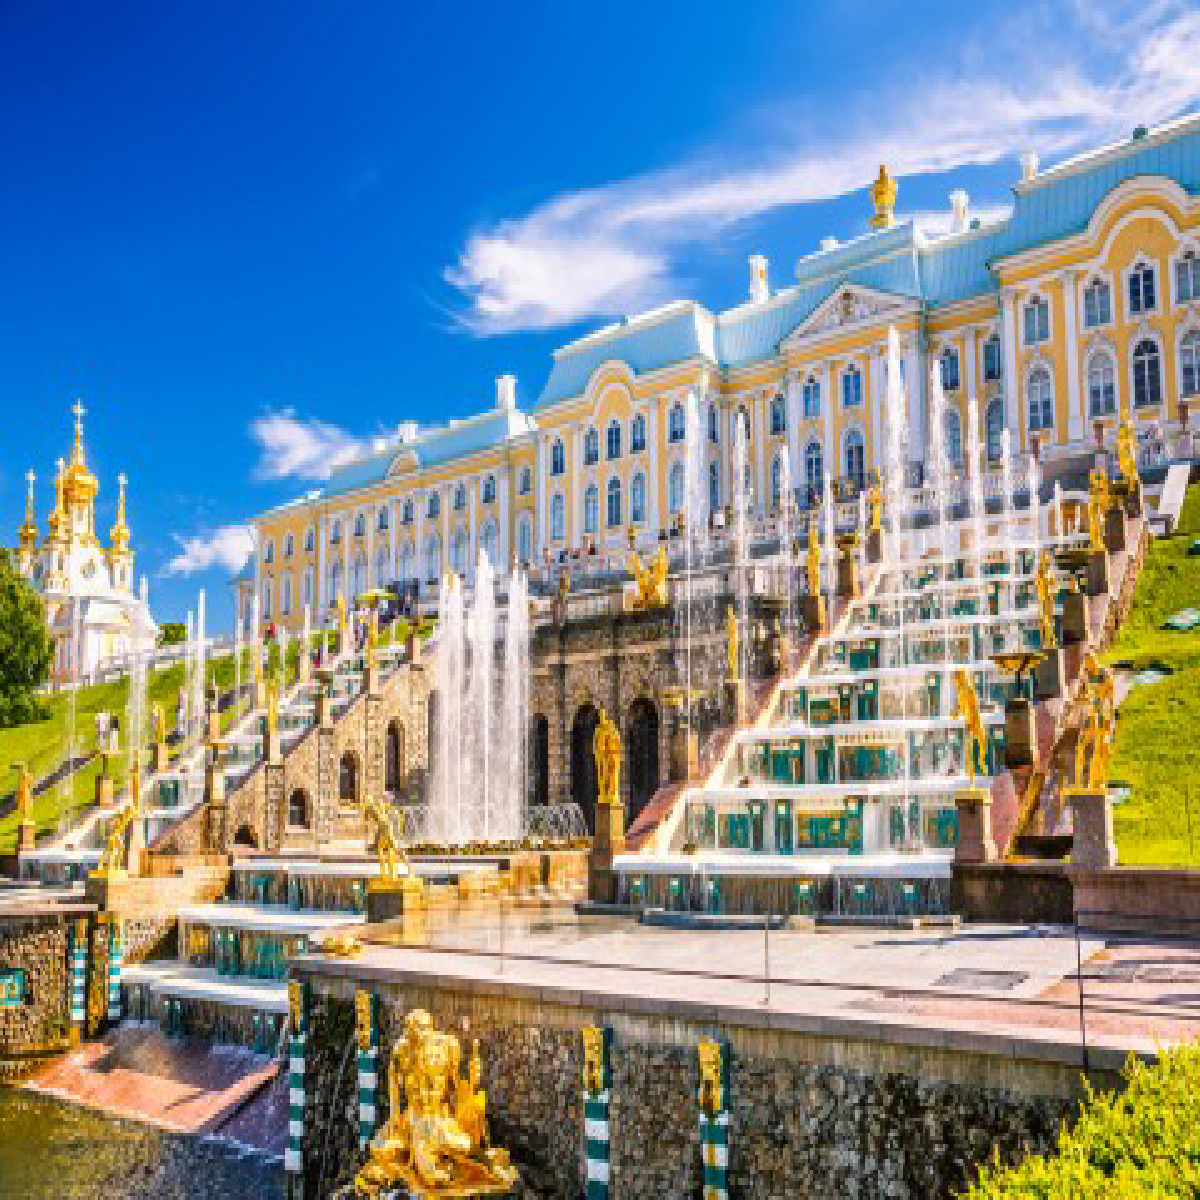 ภาพ : พระราชวังฤดูร้อน Peterhof, St. Petersburg รัสเซีย